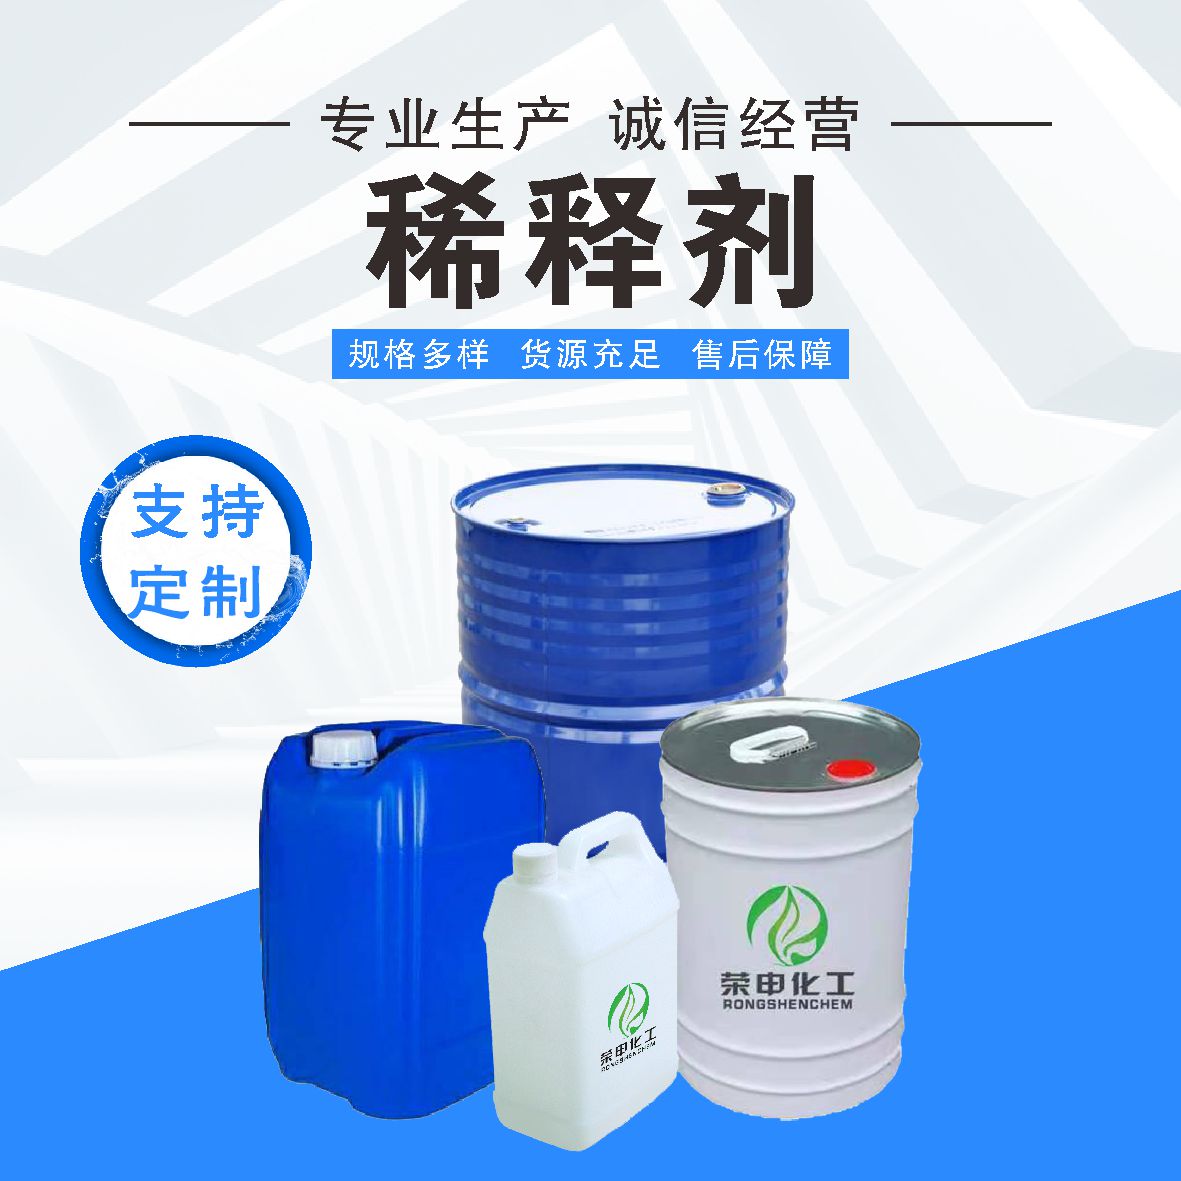 油墨稀释剂鄂州厂家批发 荣申化工供应 提高品质与效率